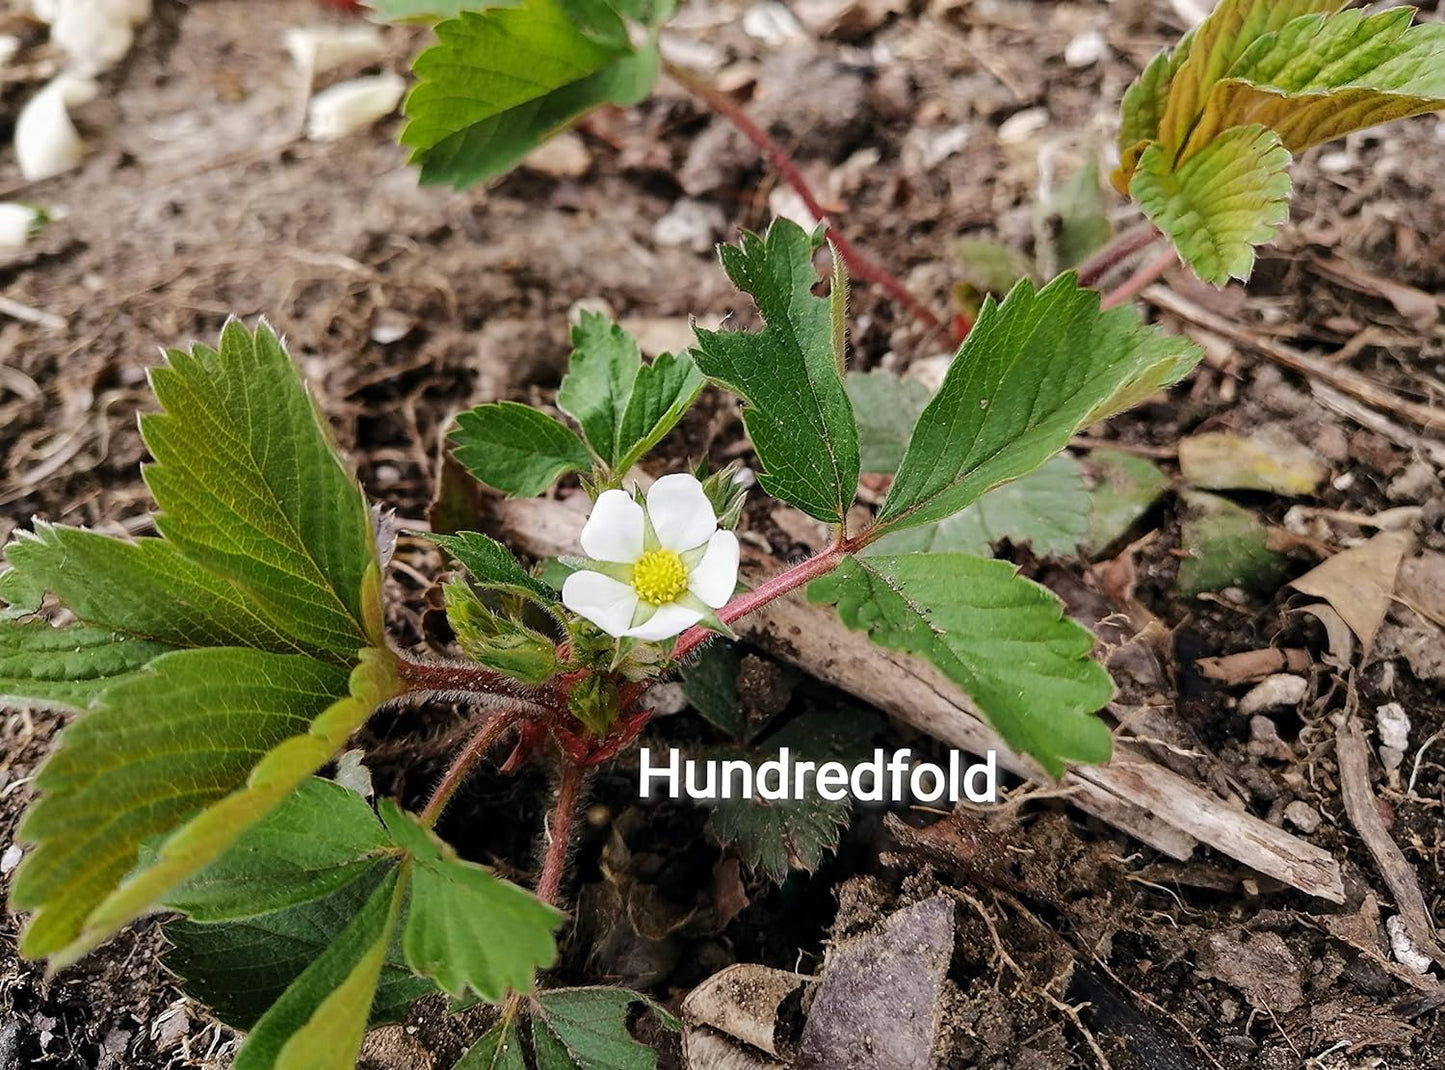 Hundredfold Wild Strawberry 20 Seeds - Non-GMO Fragaria virginiana, Canada Native, Ontario Grown, for Container, Yard, Garden & Ground Cover